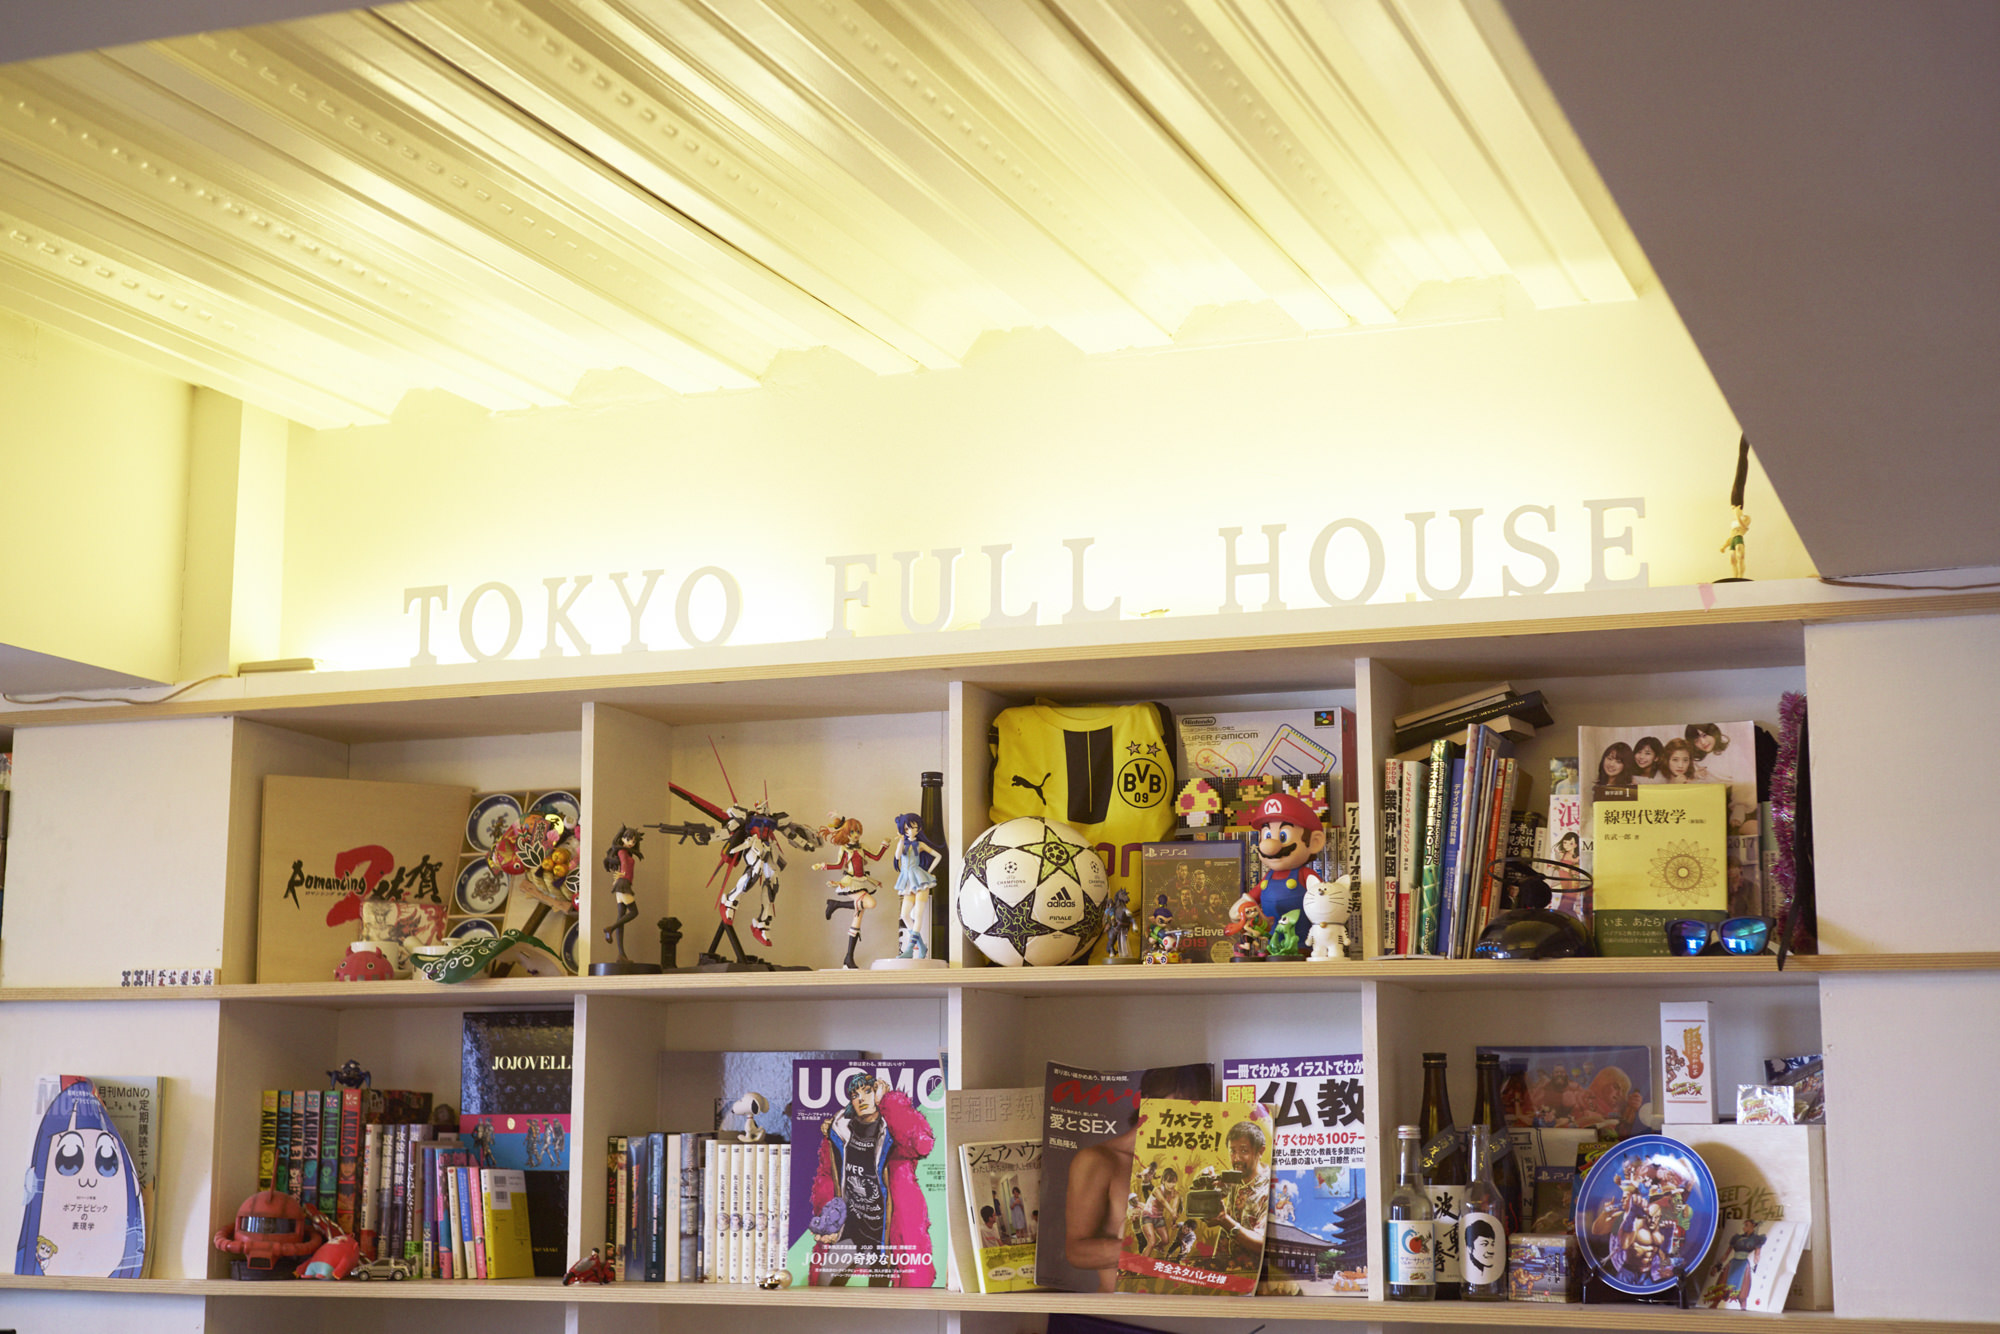 東京フルハウスの屋内の写真。棚にフィギュアや雑誌などが並んでいる